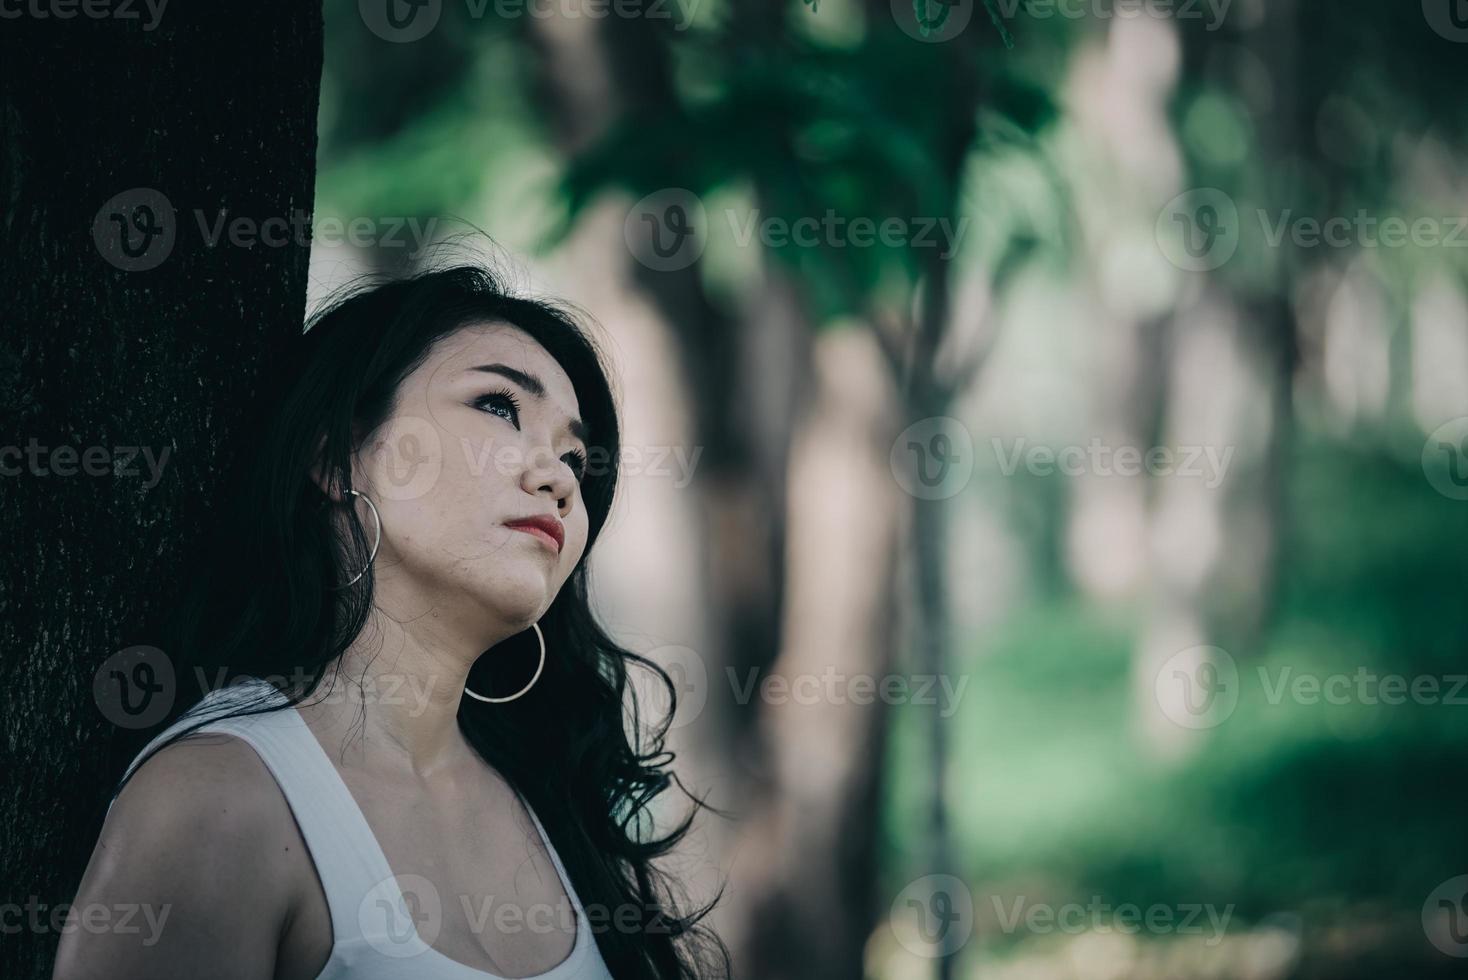 Grosse femme triste et solitaire, elle réfléchit à l'amour, au chagrin, au cœur brisé à cause de la déception, les thaïlandais photo